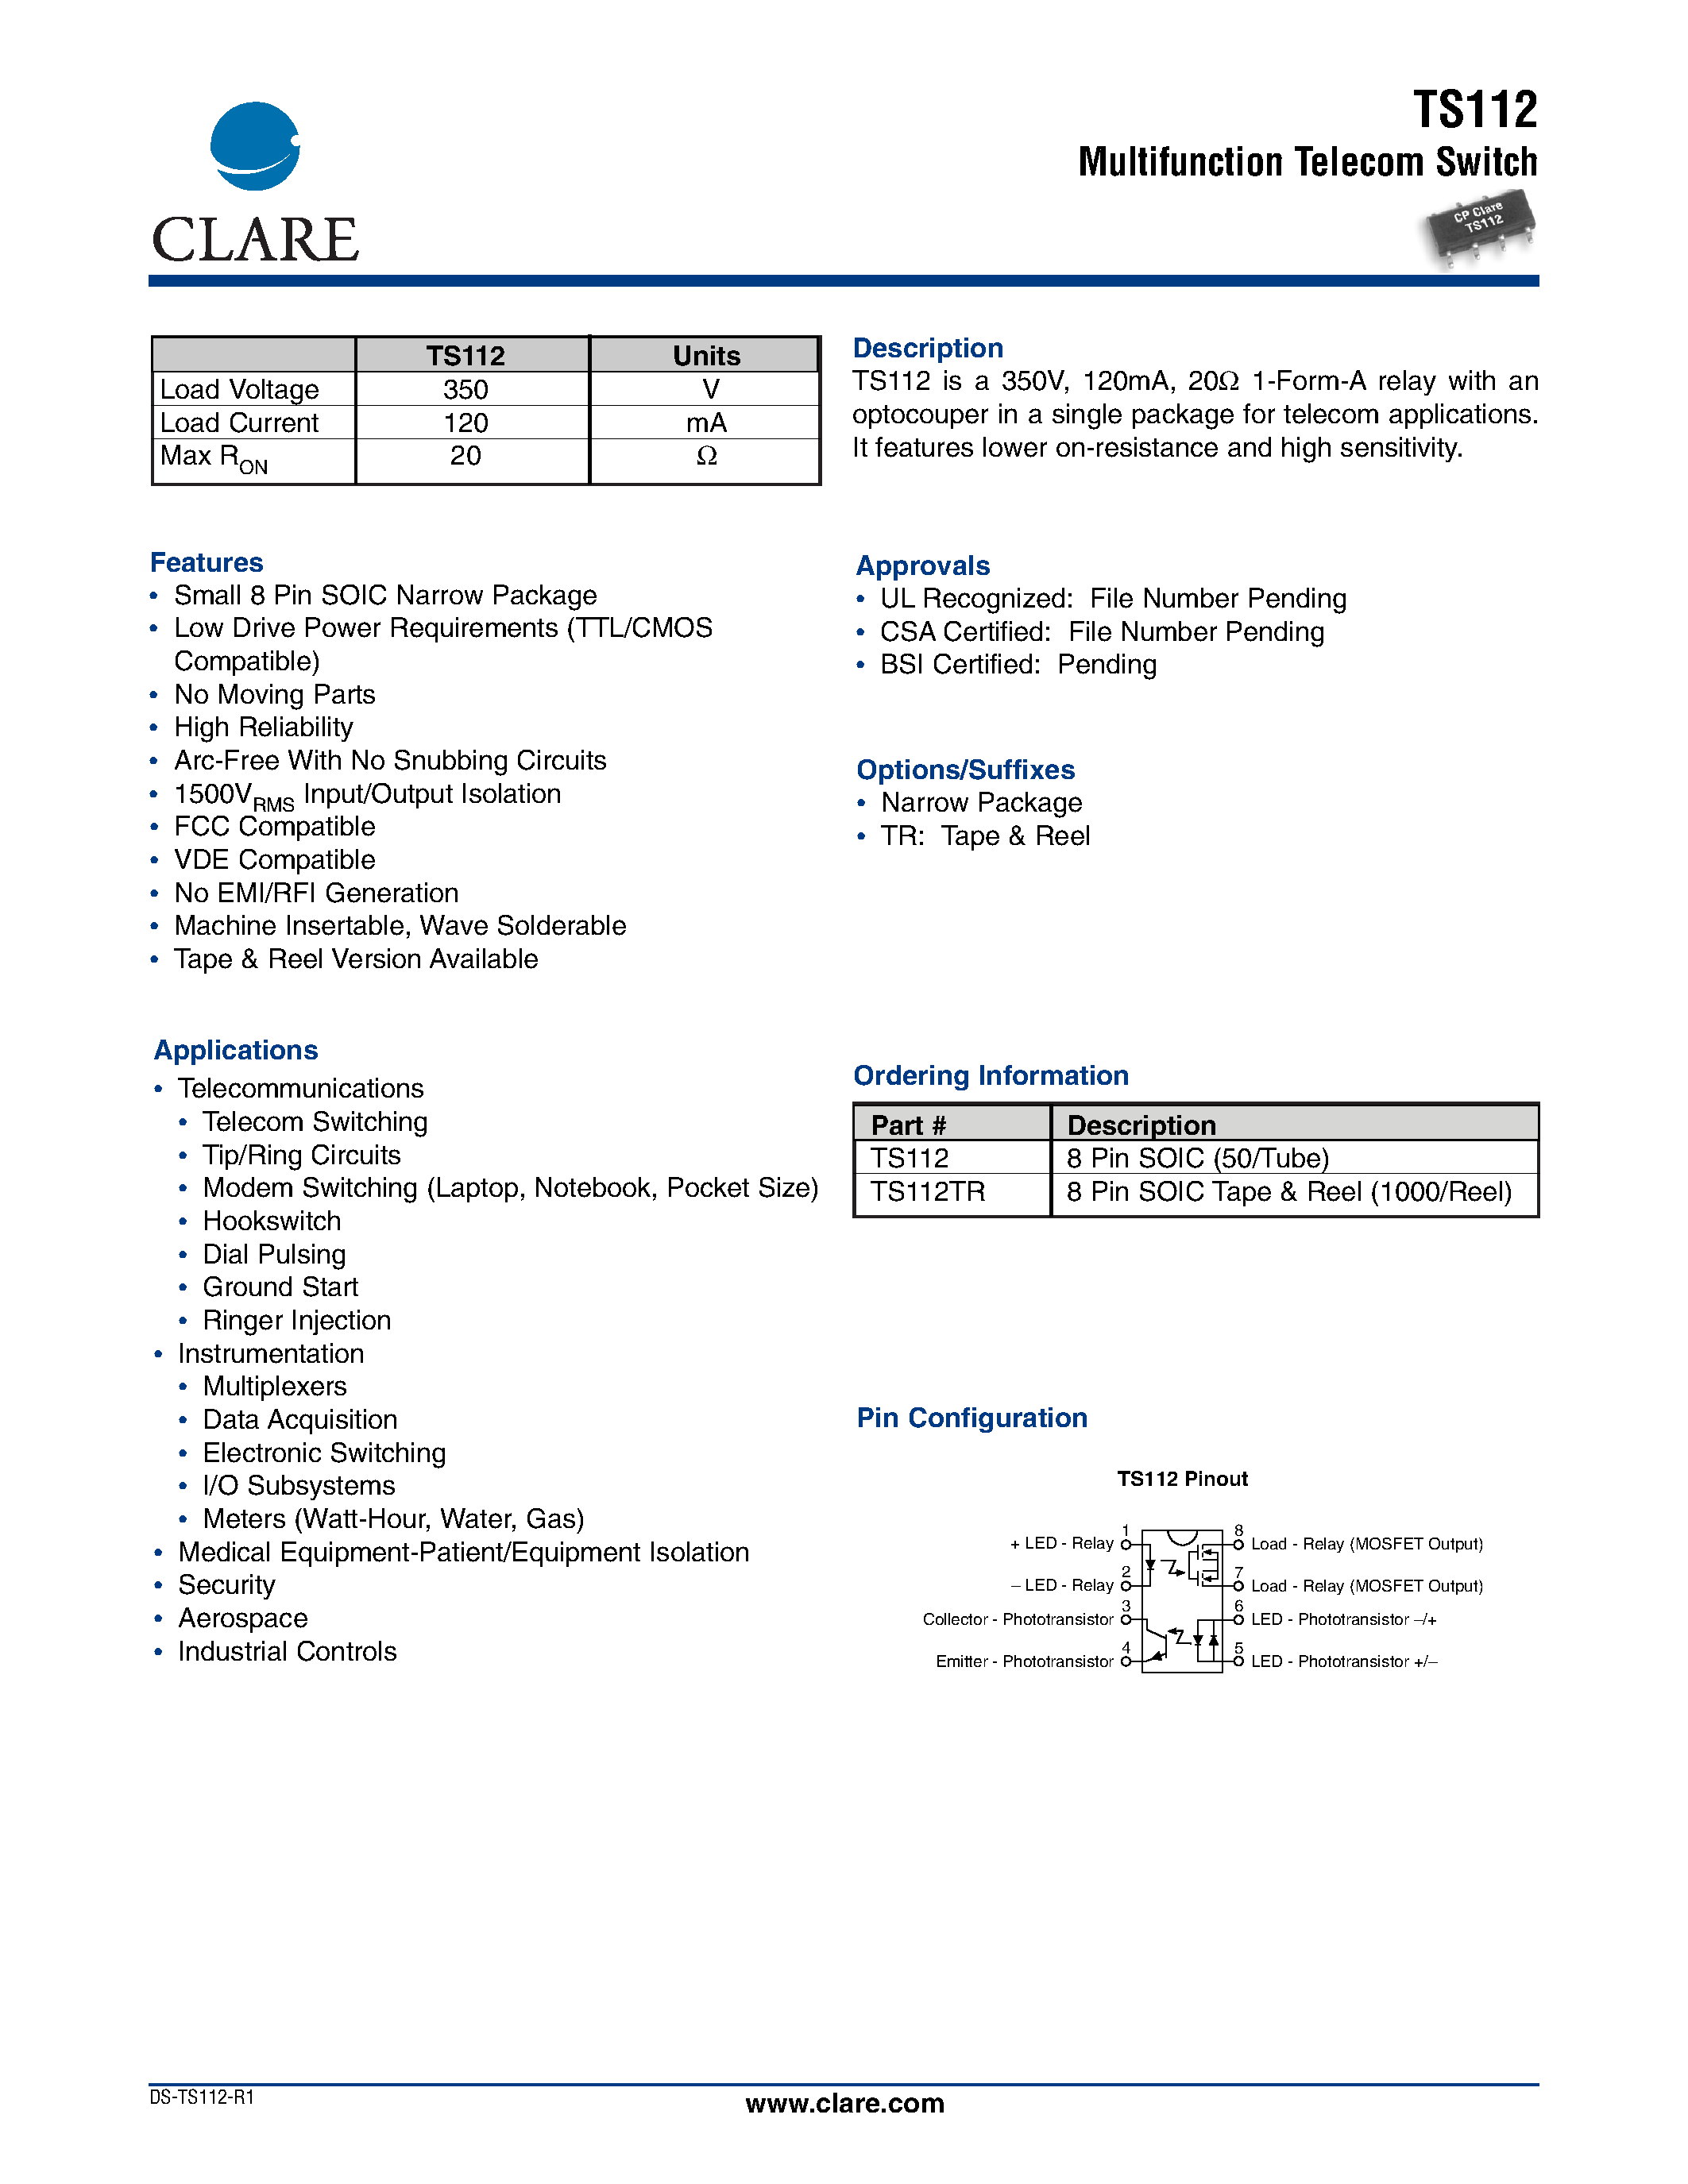 Datasheet TS112 - Multifunction Telecom Switch page 1